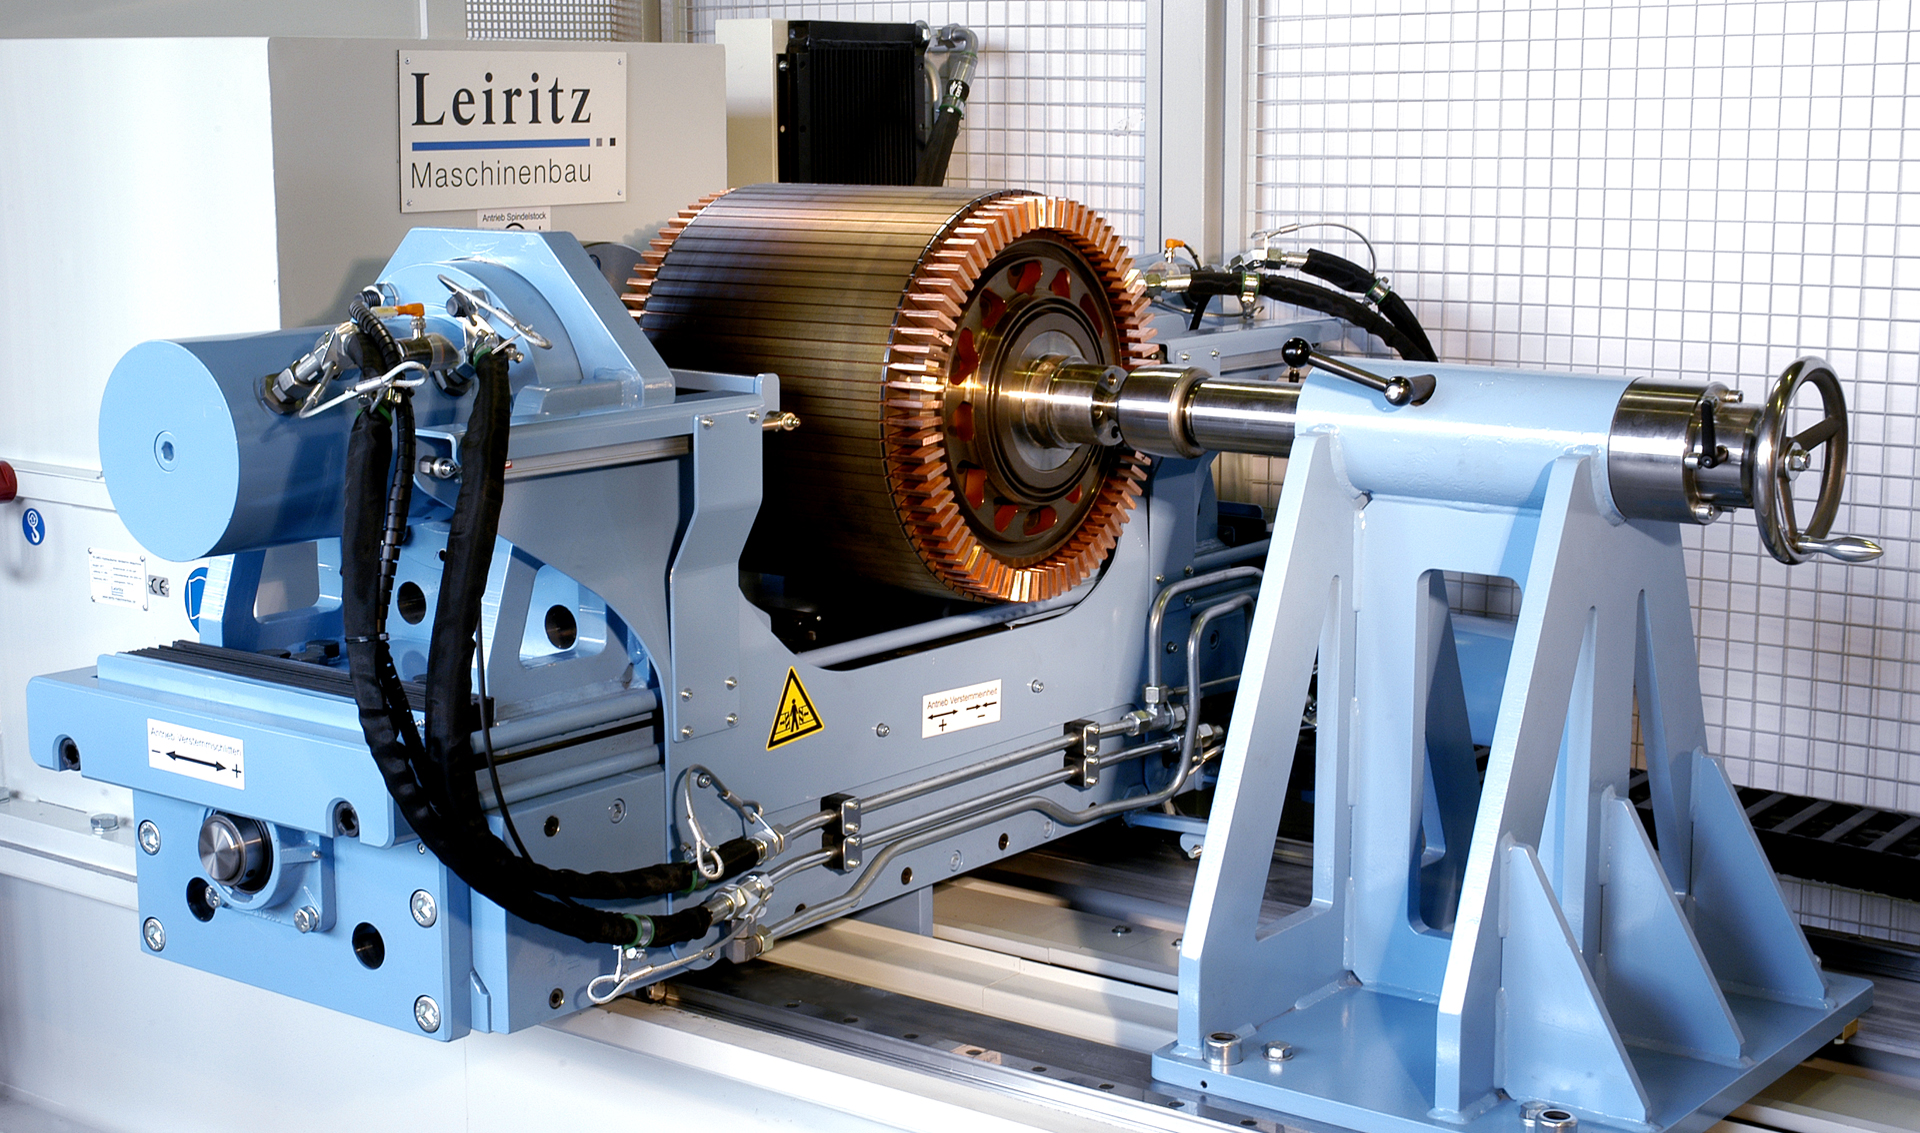 Sondermaschinenbau von Maschinenbau Leiritz in Pappenheim